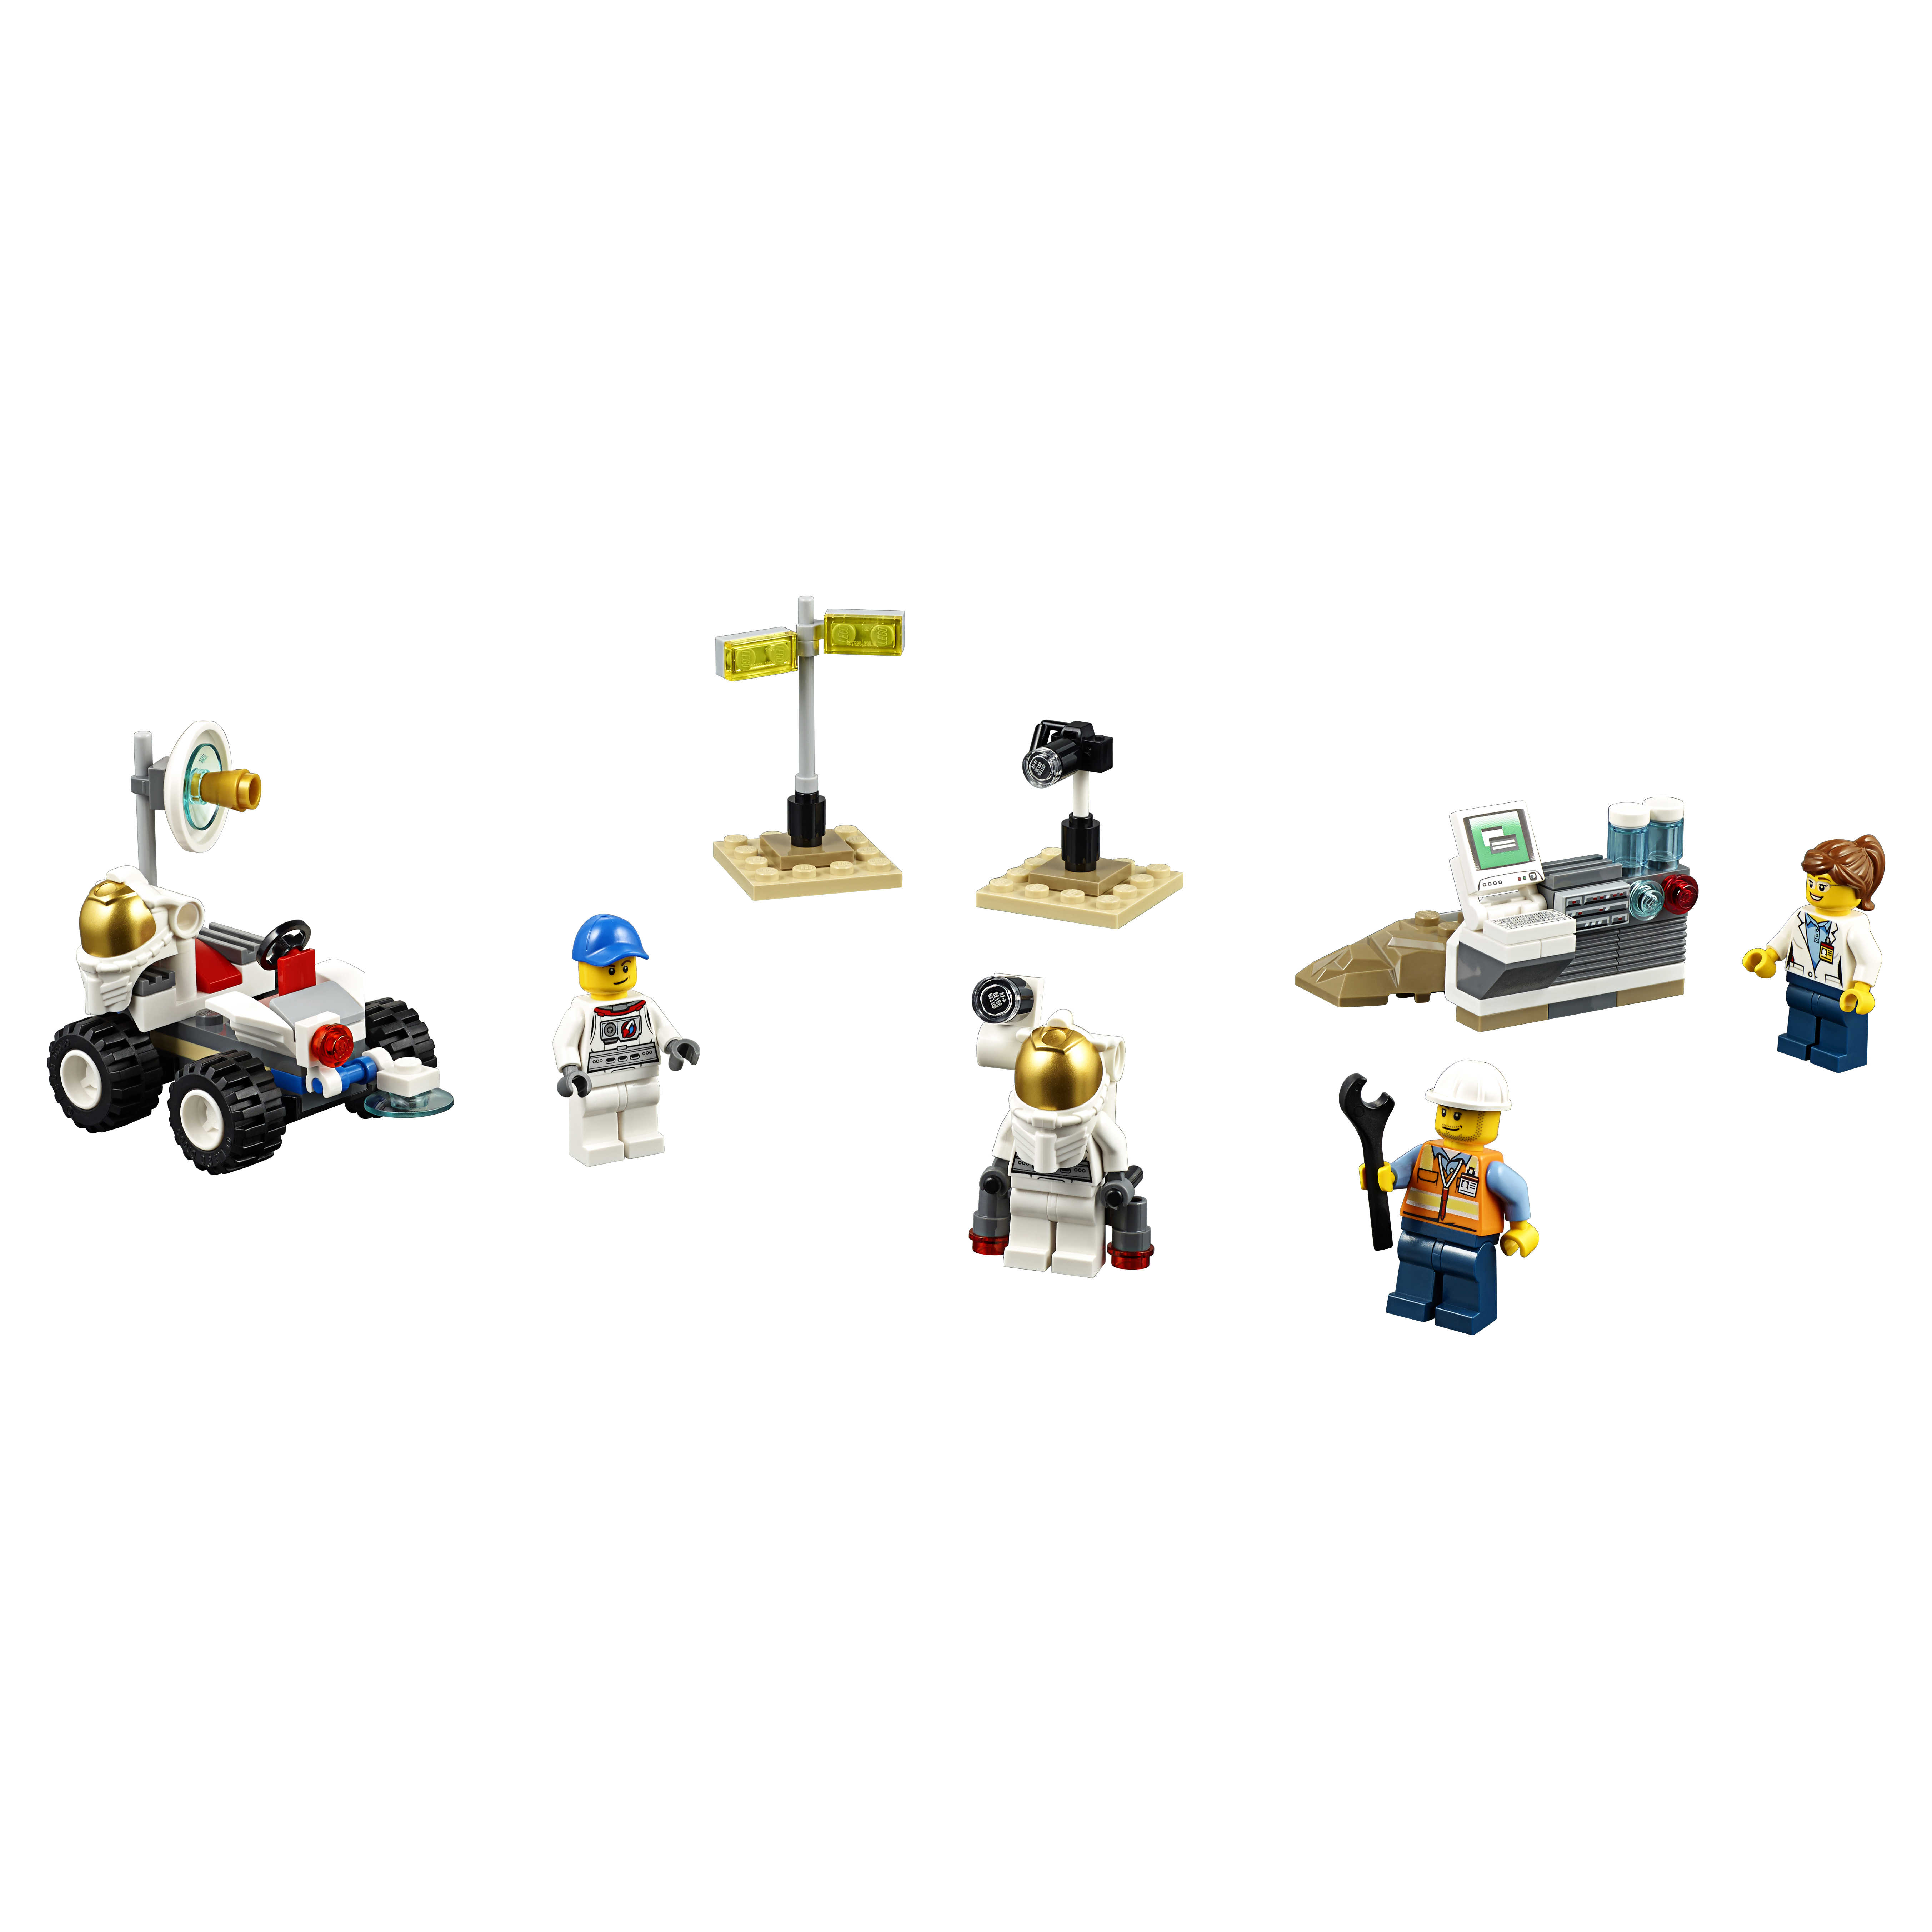 Конструктор LEGO City Space Port Набор для начинающих Космос (60077) конструктор lego кирпич 2 х 4 белый набор из 50 шт 300101